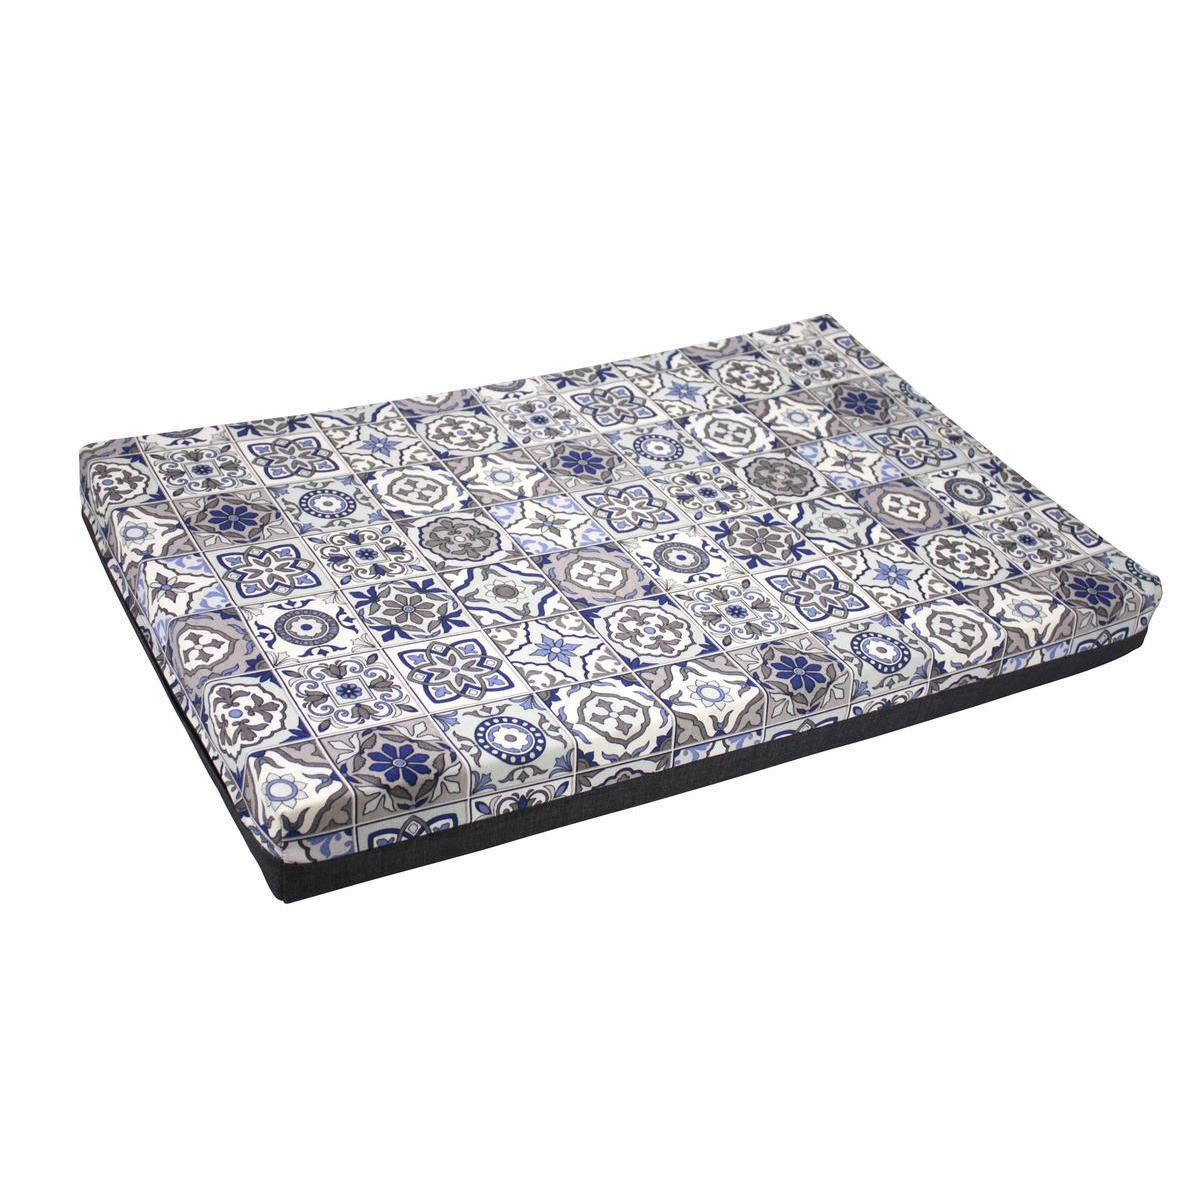 Matelas déhoussable motifs carreaux de ciment - 50 x 80 x 8 cm - Différents modèles - Bleu, gris